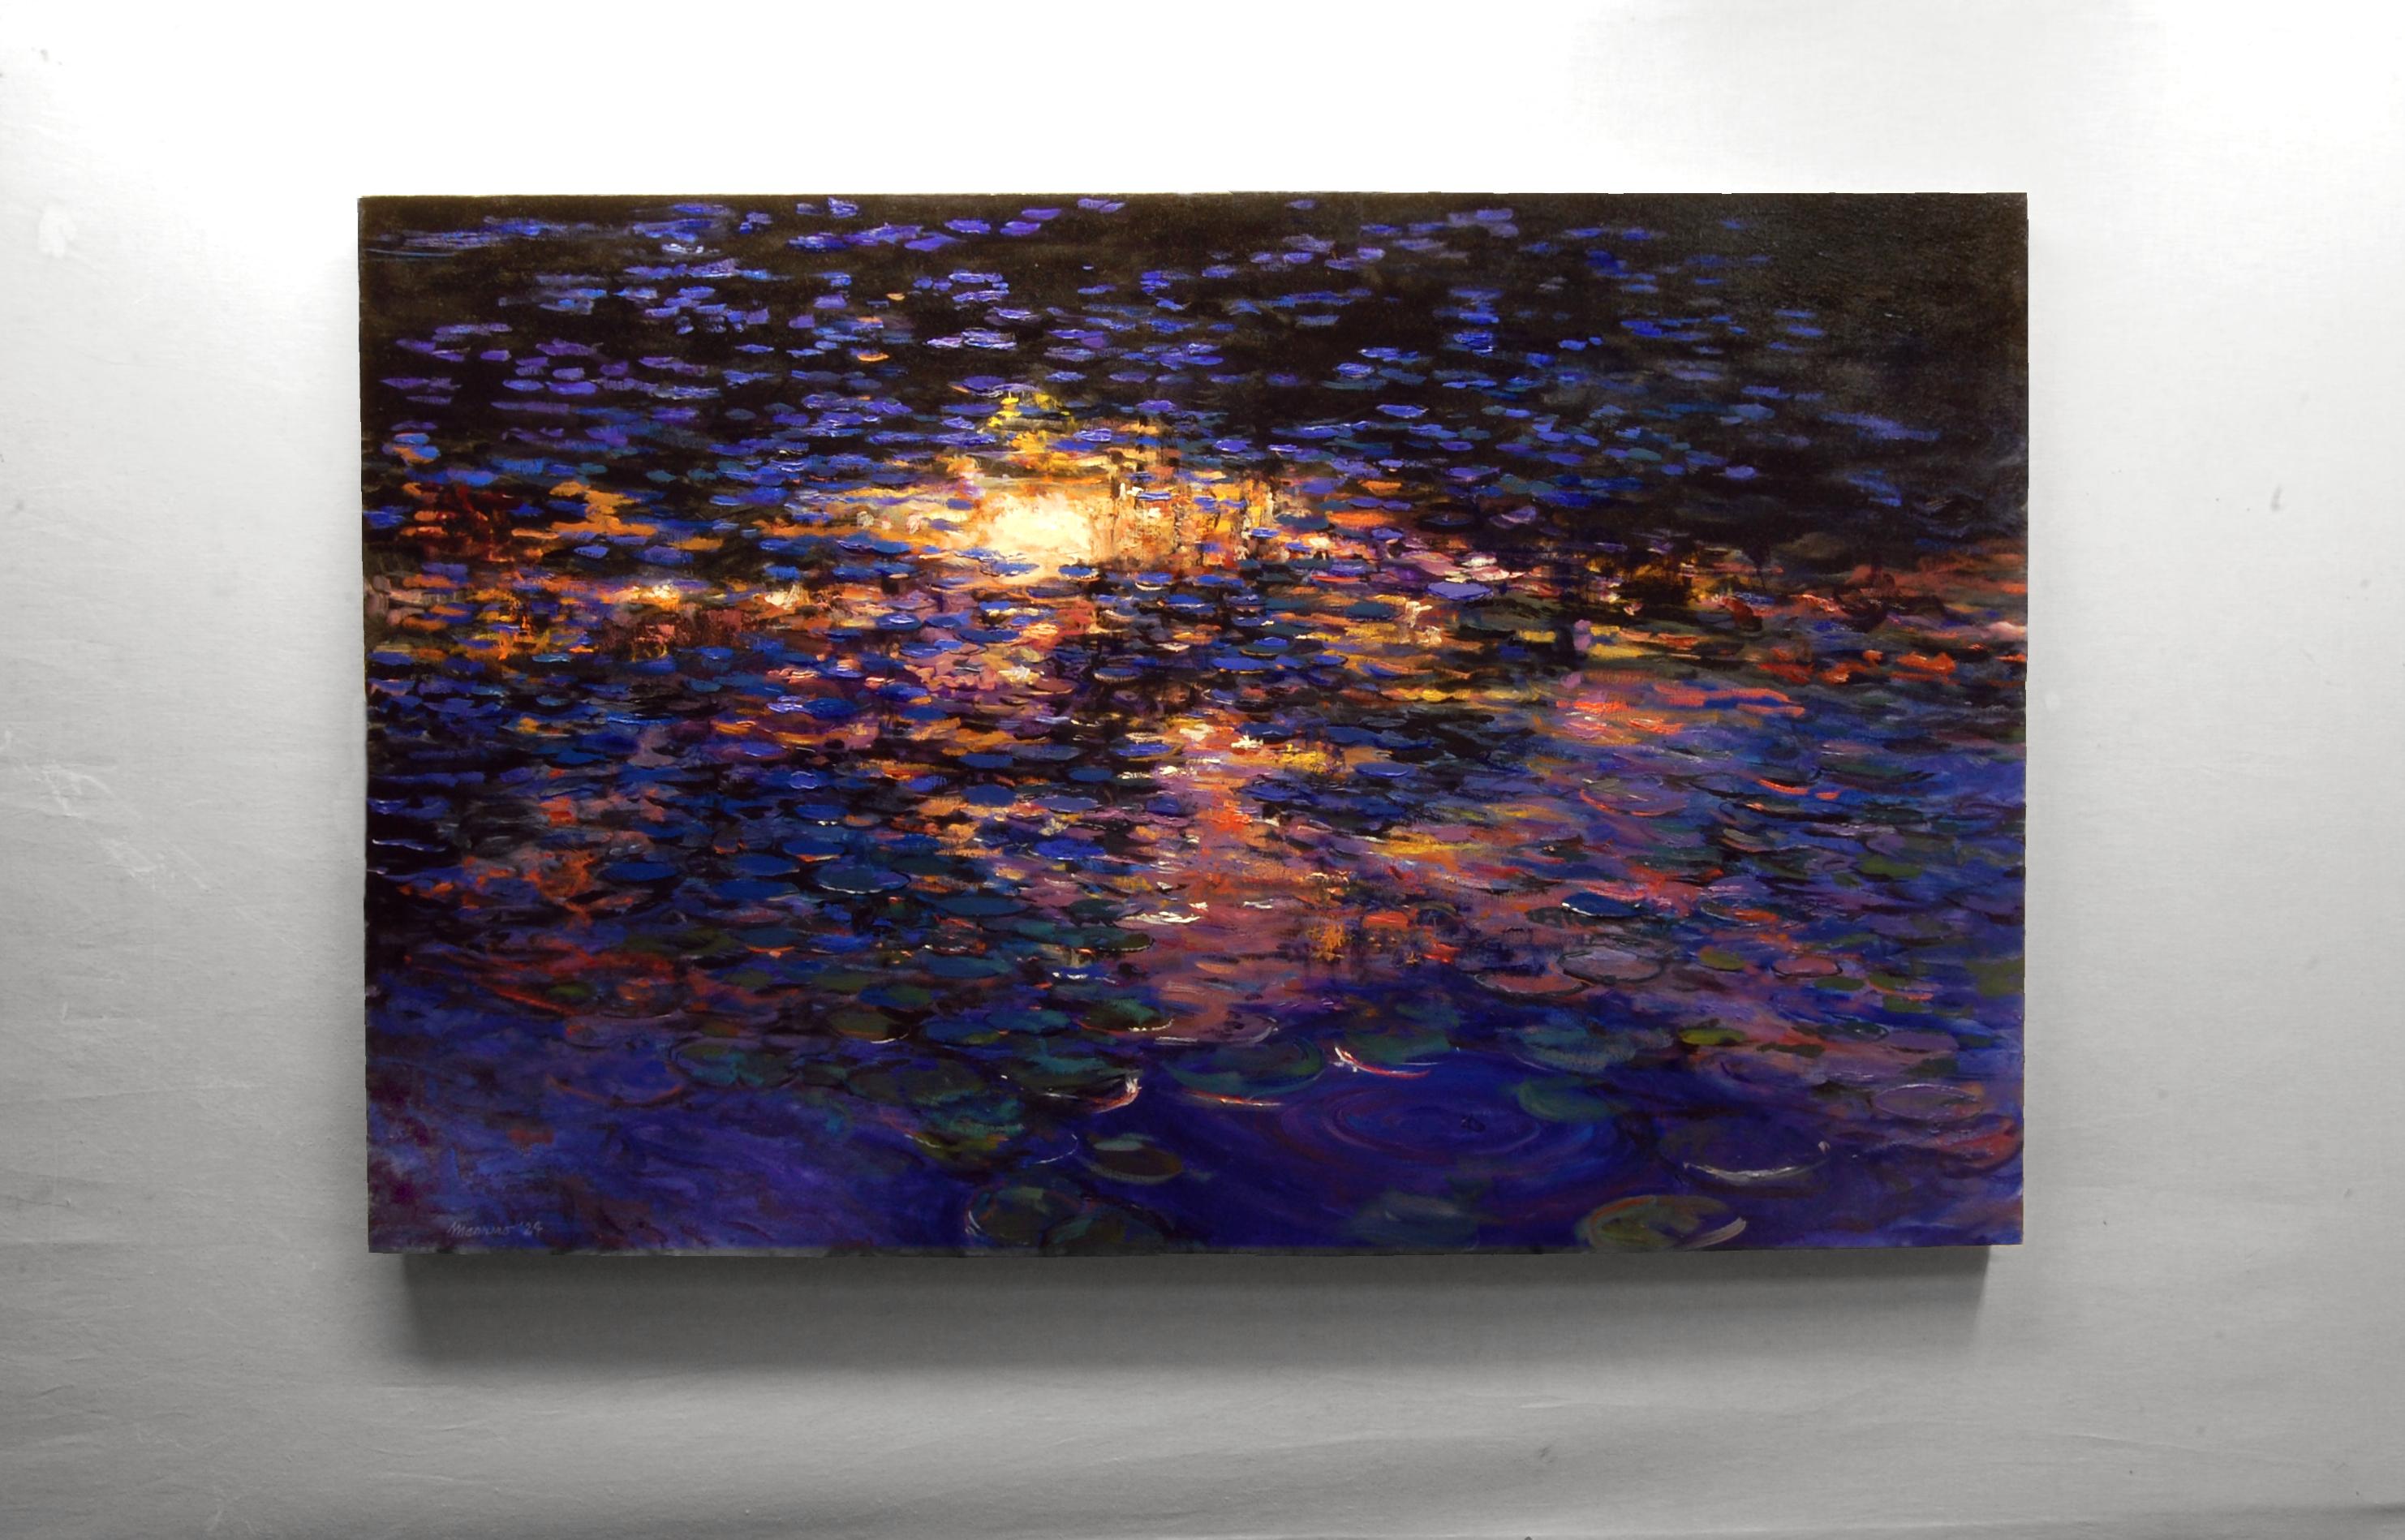 <p>Kommentare des Künstlers<br>Der Künstler Onelio Marrero stellt einen Teich dar, in dem sich die Farben des nächtlichen Himmels und die Silhouette der Bäume vor dem feurigen Sonnenuntergang spiegeln. Die Wasserpflanzen weisen verschiedene Farbtöne